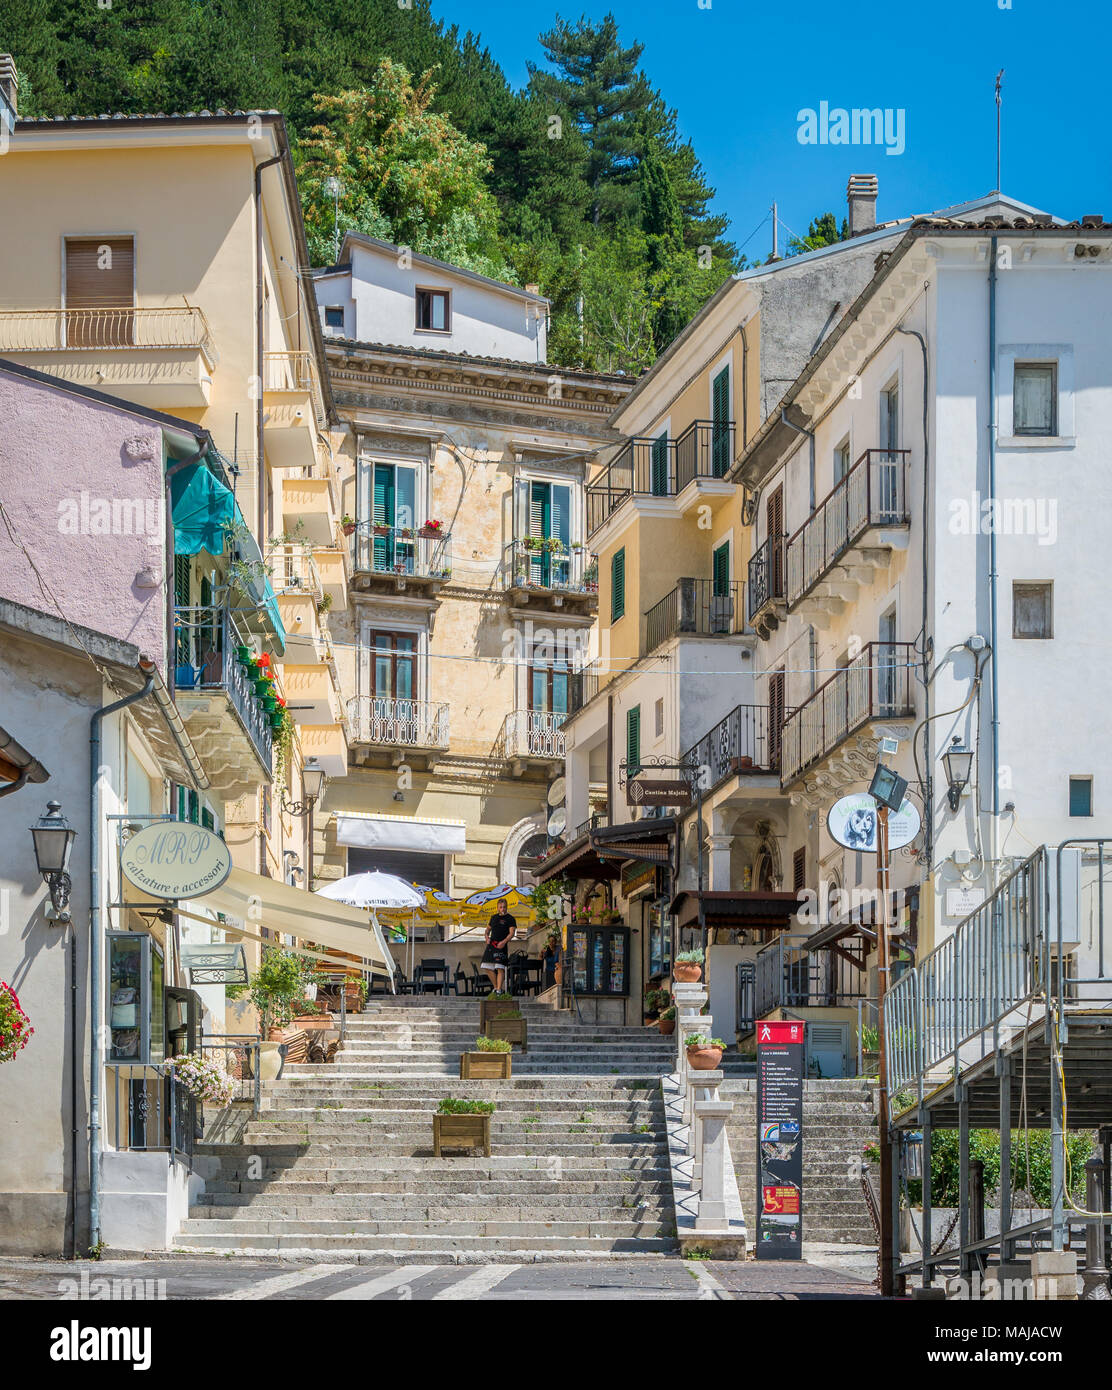 Scenic sight in Caramanico Terme, comune in the province of Pescara in the  Abruzzo region of Italy Stock Photo - Alamy